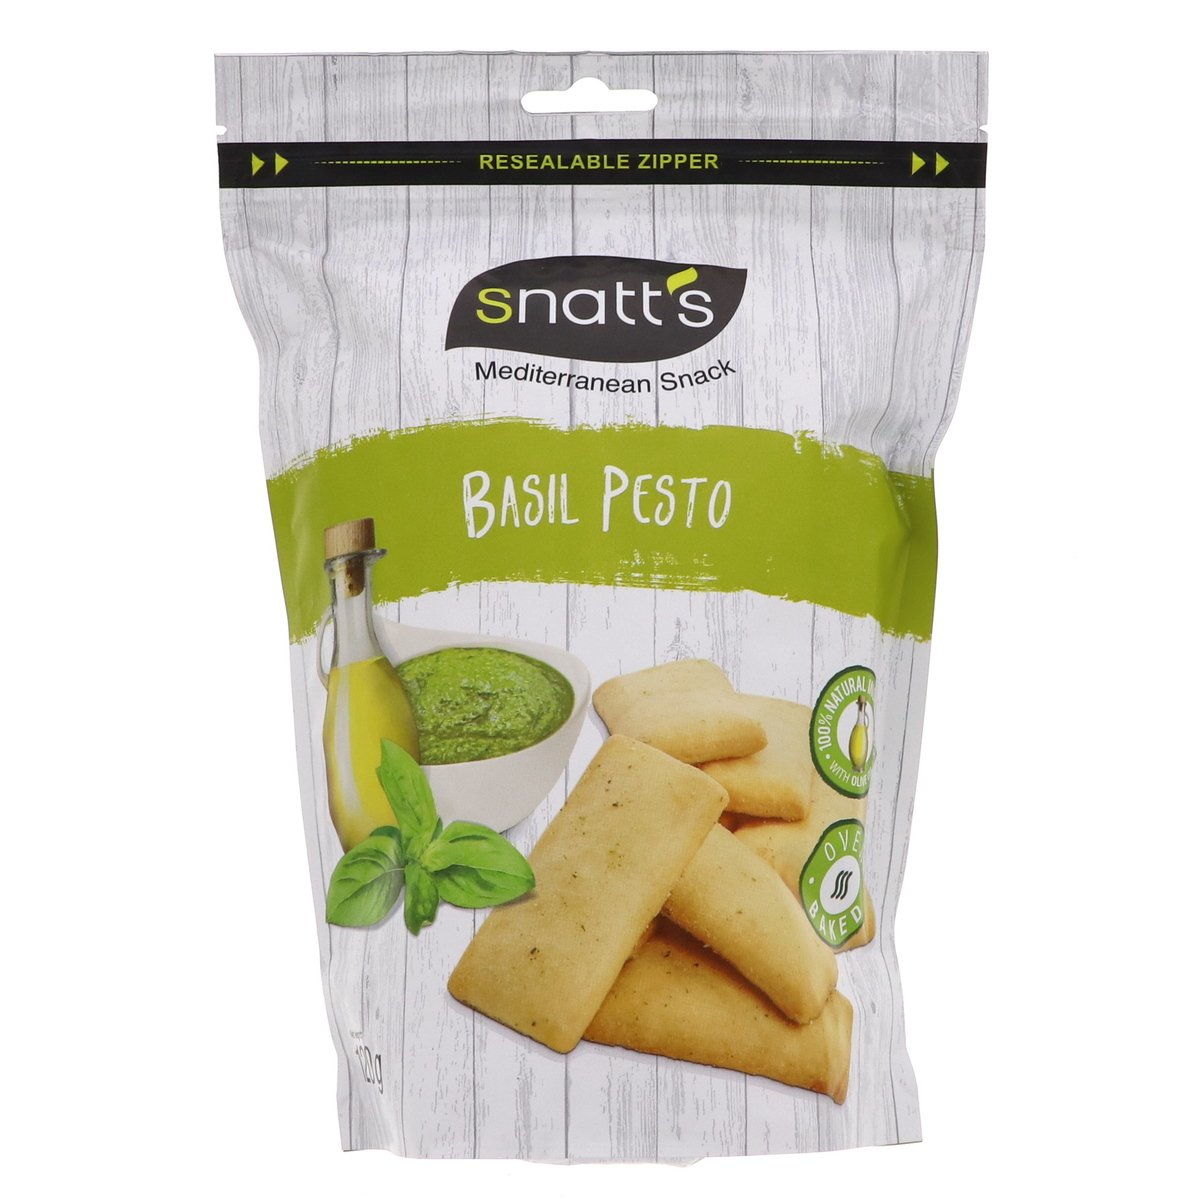 Snatt's Mediterranean Snack Basil Pesto 120 g